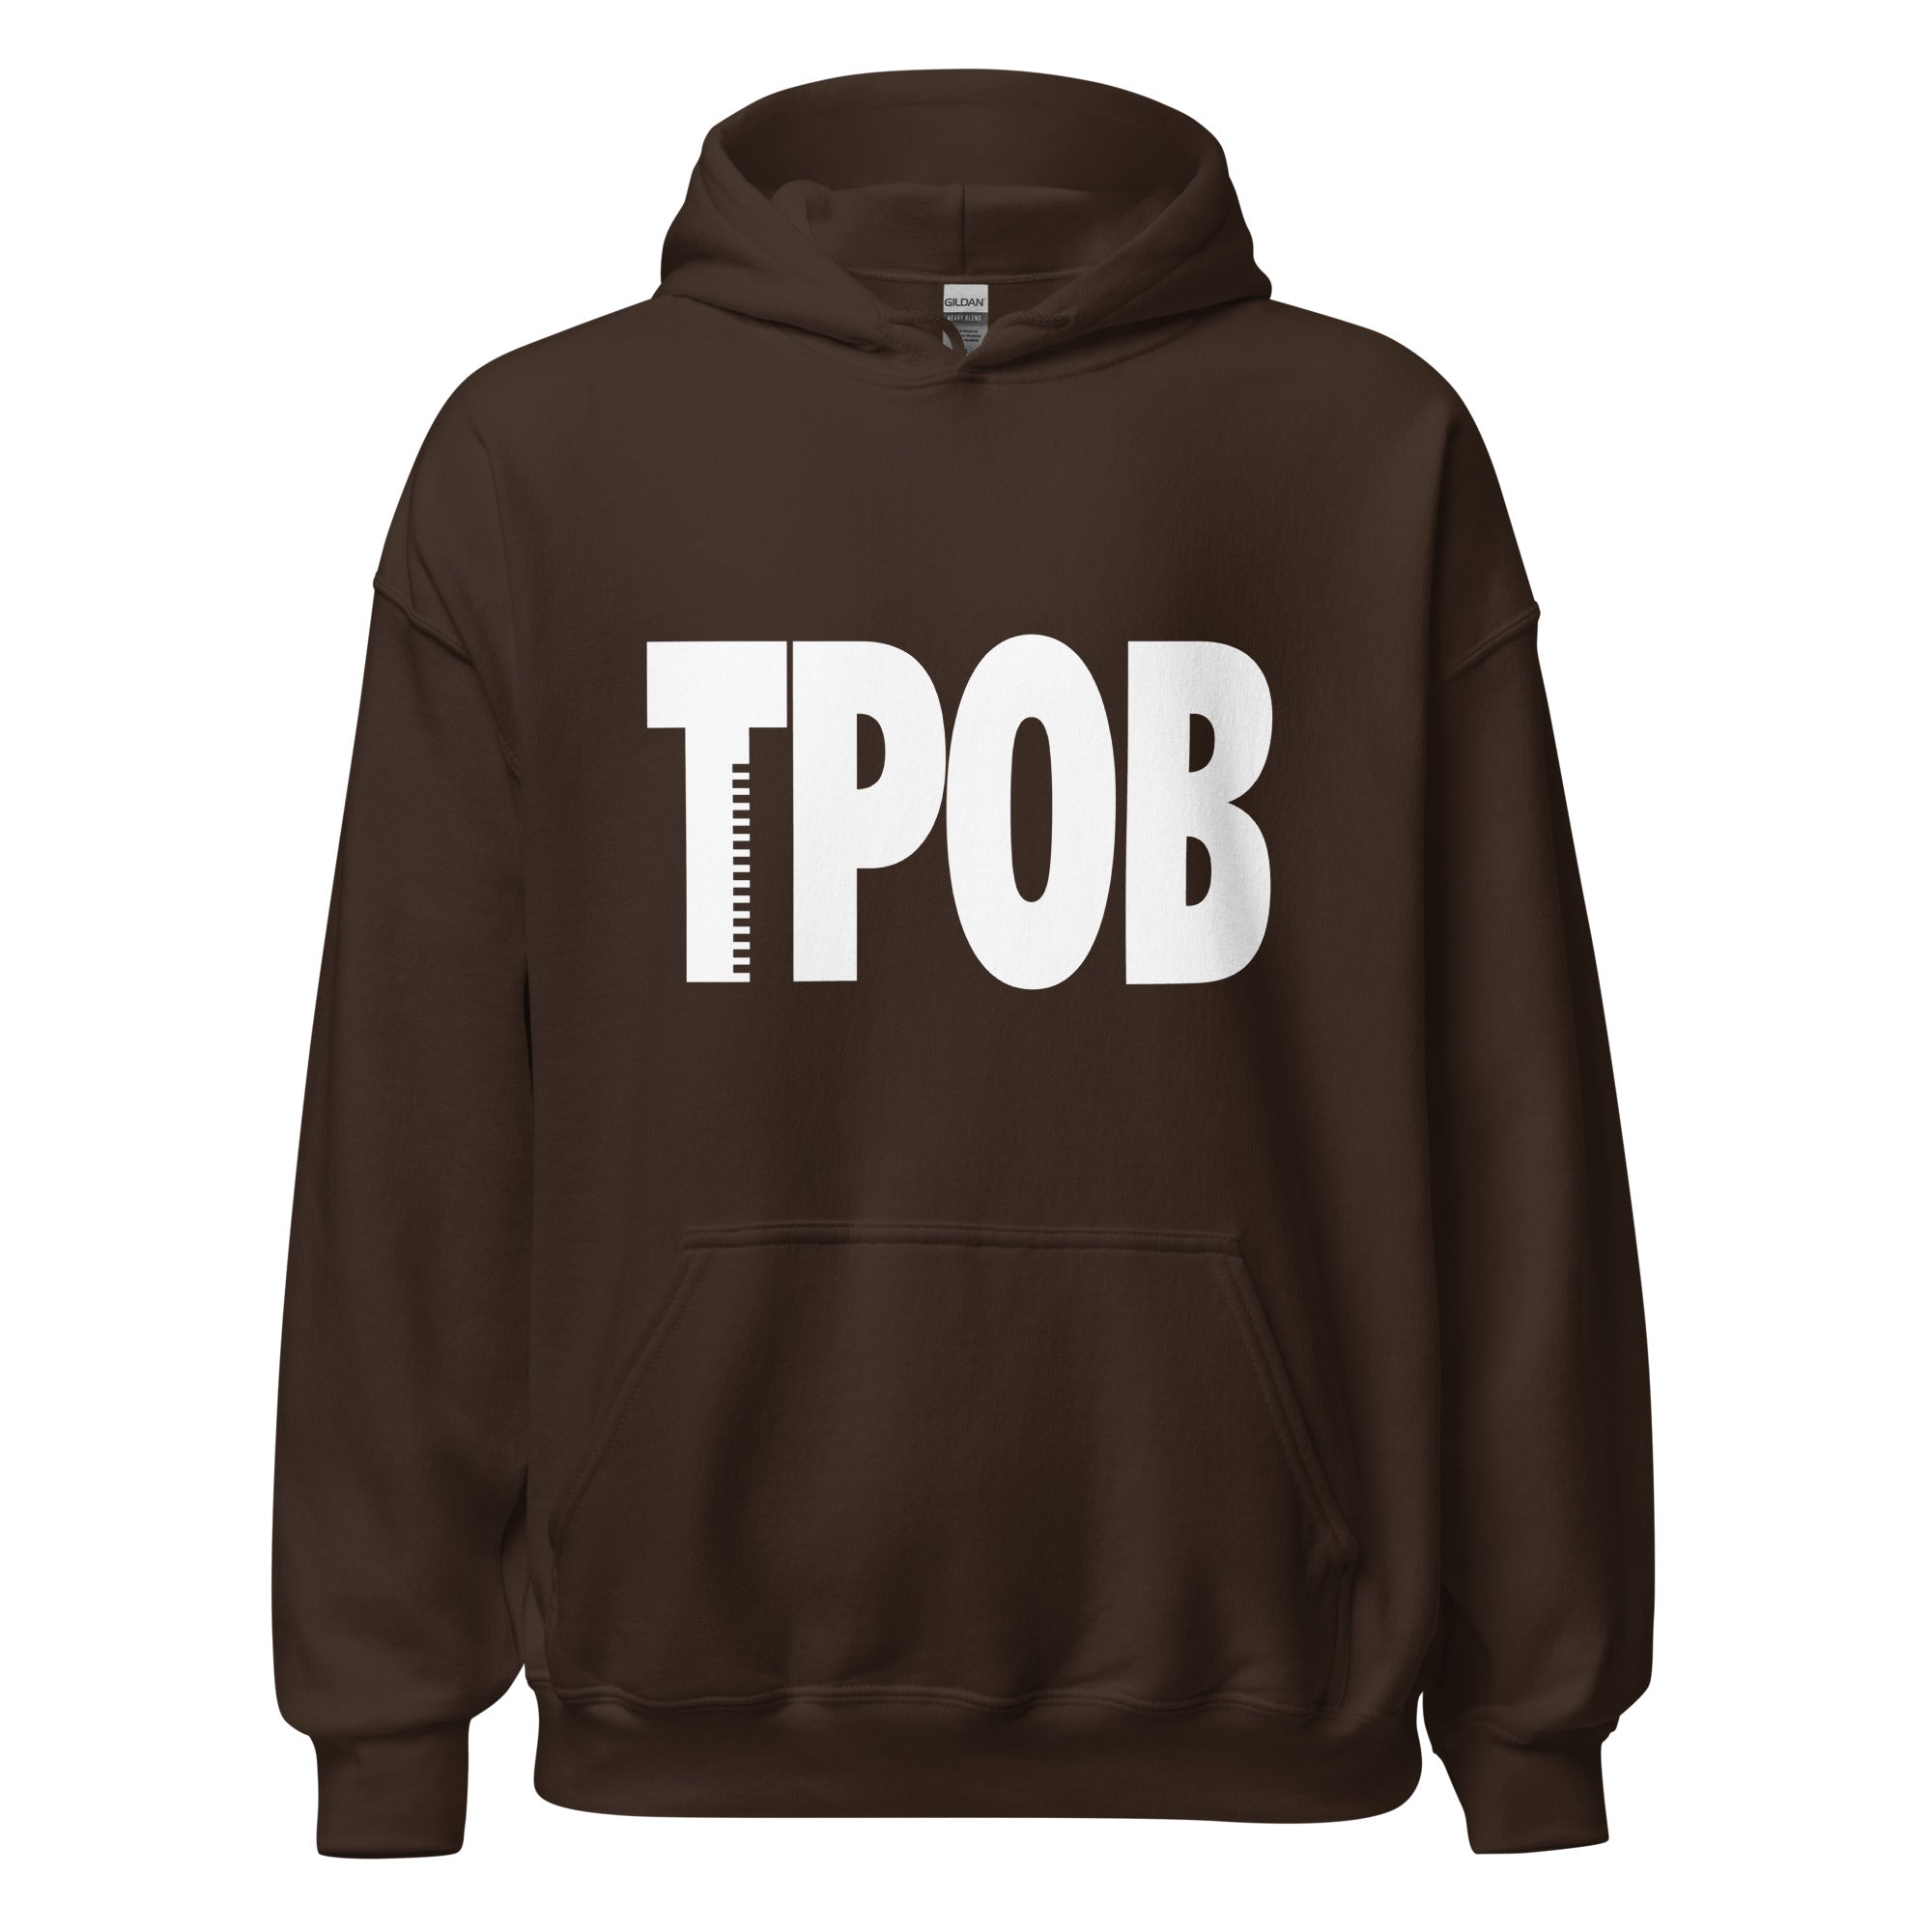 TPOB white logo hoody